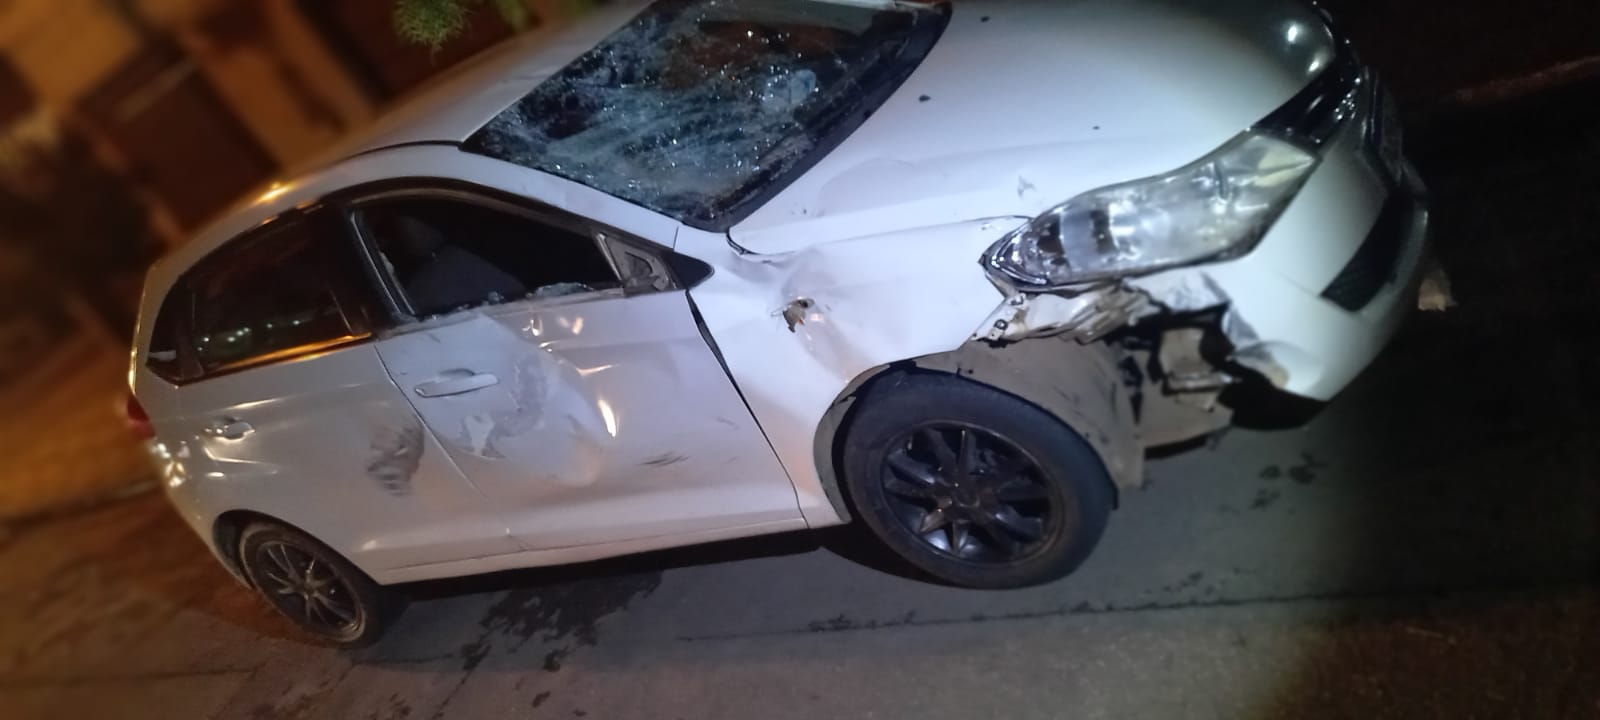 O acidente entre o motociclista e o carro ocorreu na noite do último sábado (12), próximo ao Terminal Isidória, em Goiânia (Foto: Divulgação - DICT)